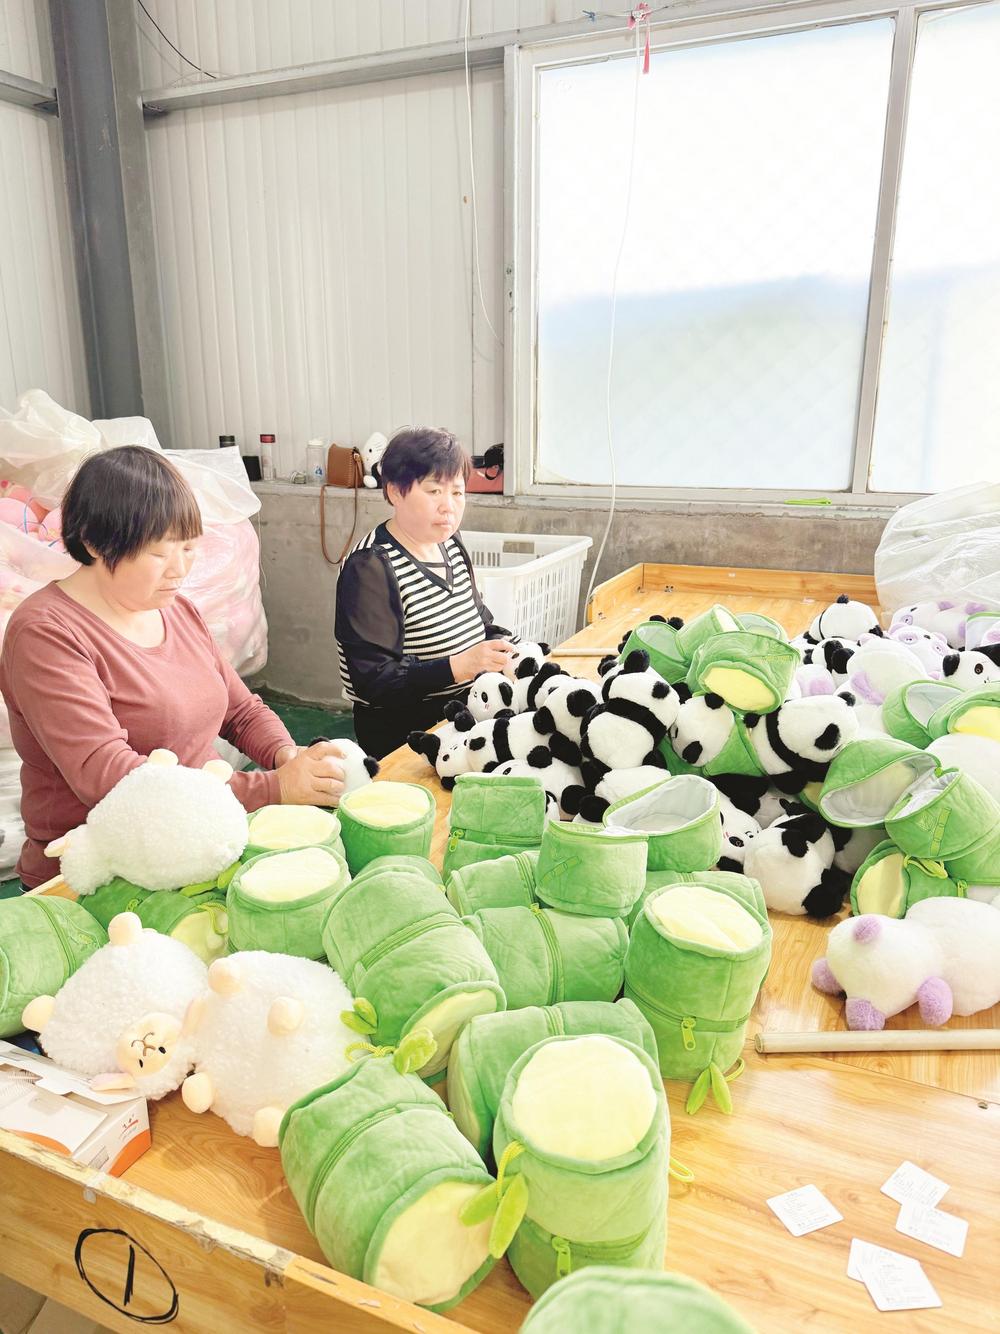 橙心玩具厂的工人正在组装毛绒玩具